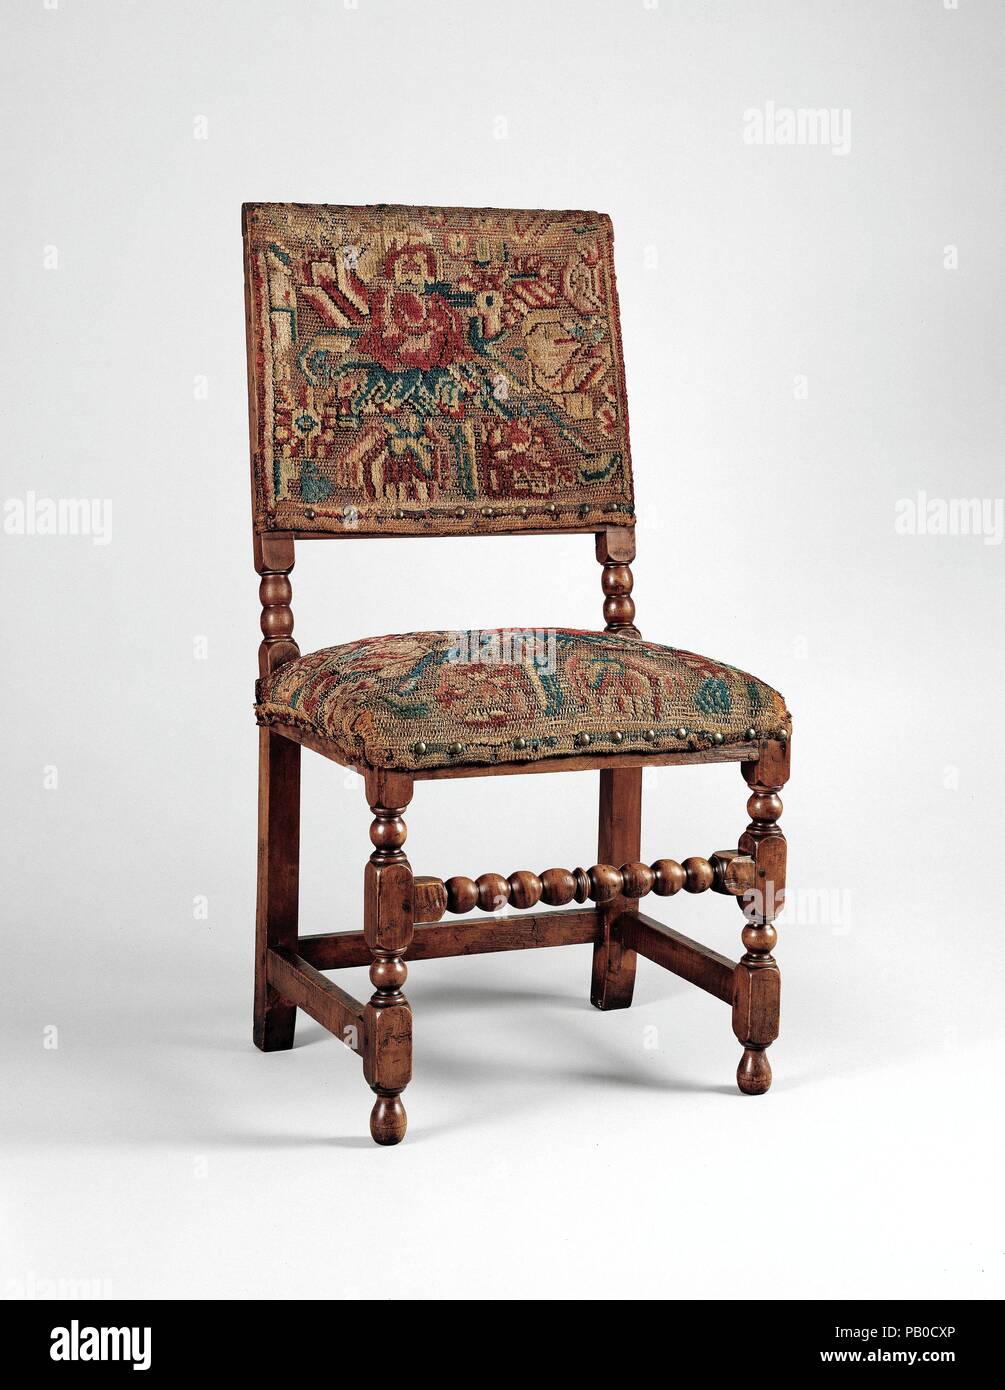 Turquía-silla de trabajo. Cultura: American. Dimensiones: 40 x 21 3/4 x 17  pulg. (103,5 x 53,3 x 43,2 cm). Fecha: 1680-1700. La gran rareza de esta  silla radica en la lana original